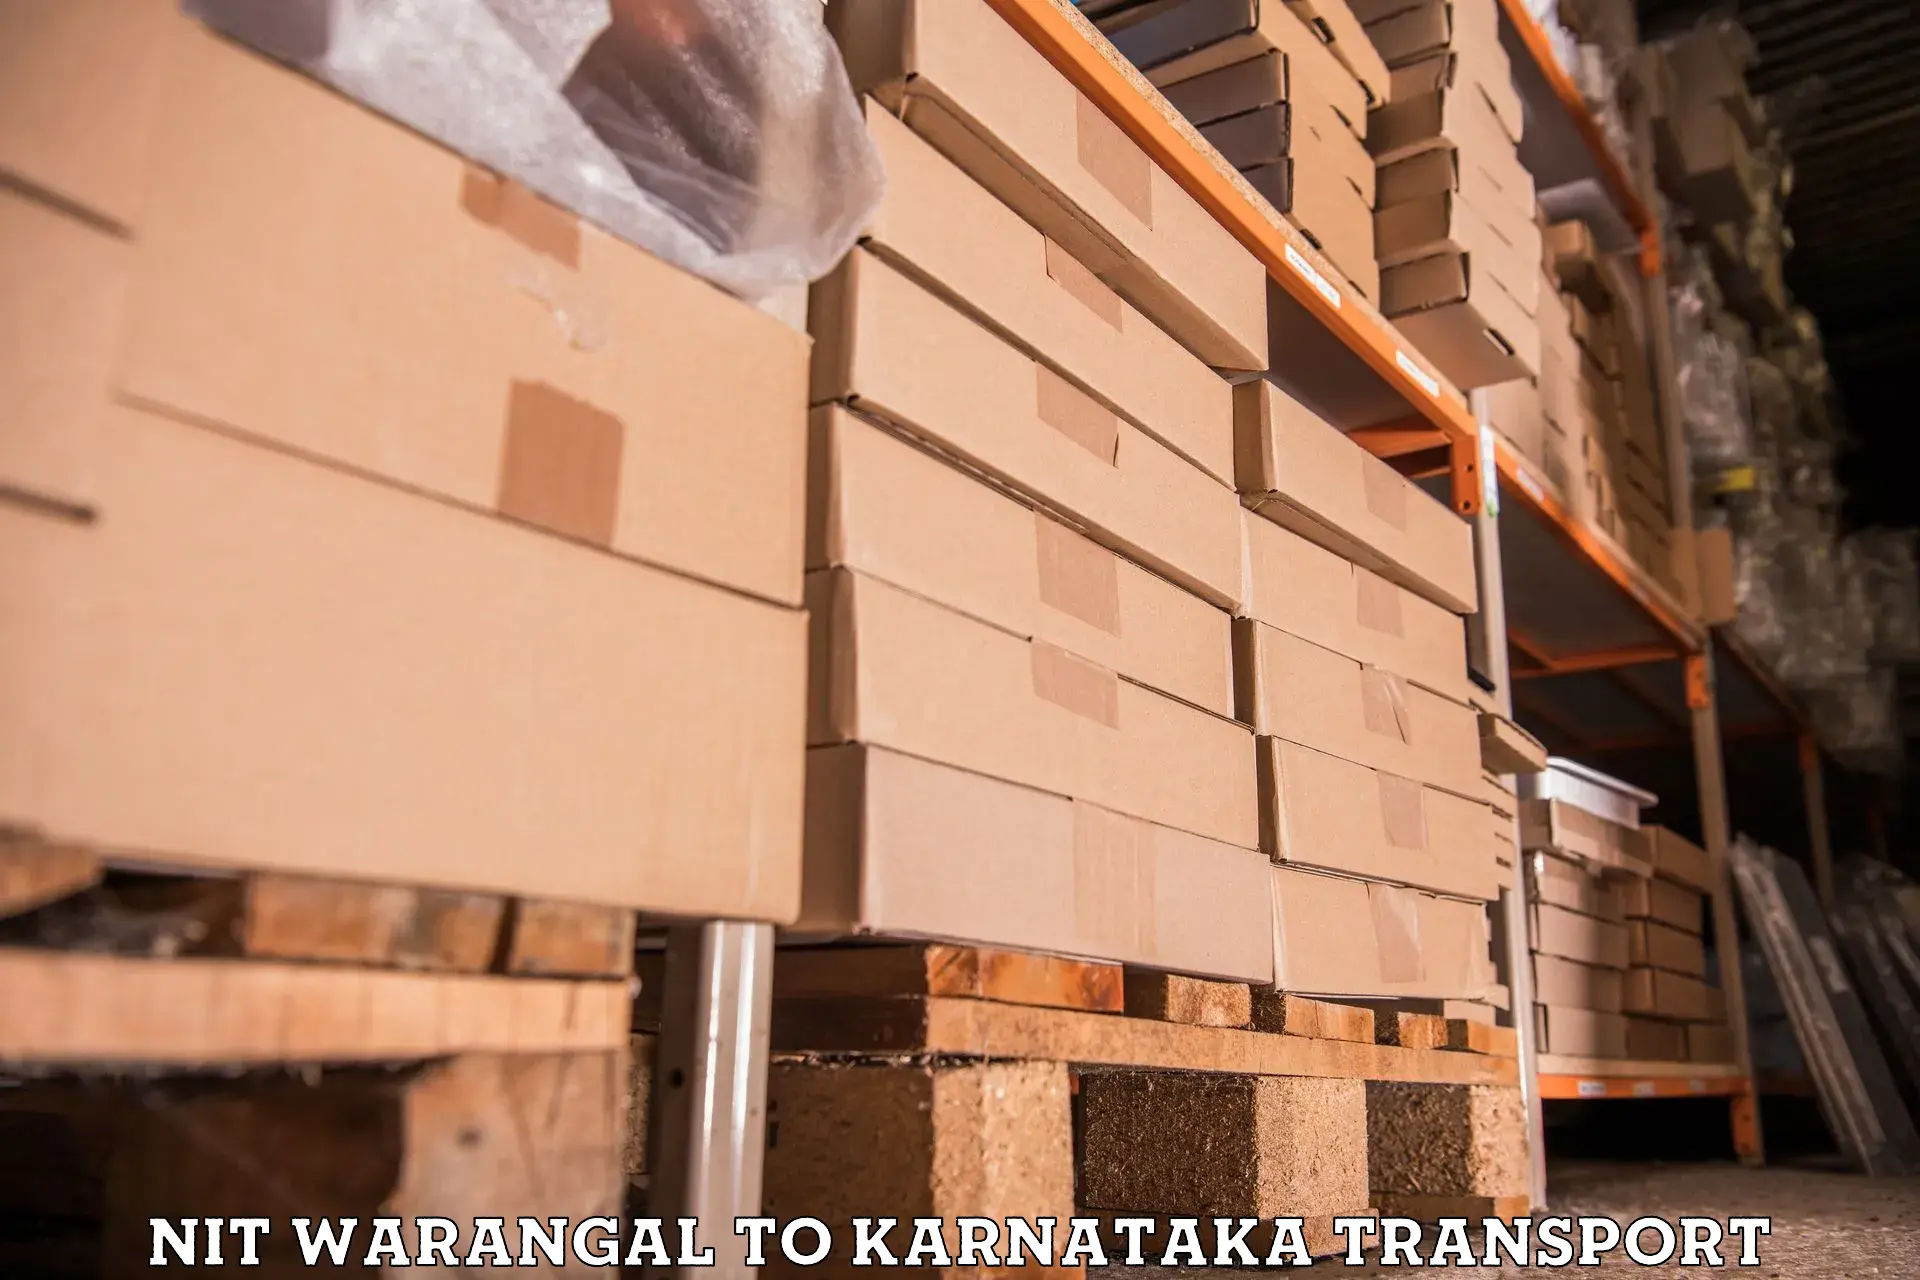 Container transport service NIT Warangal to Karnataka